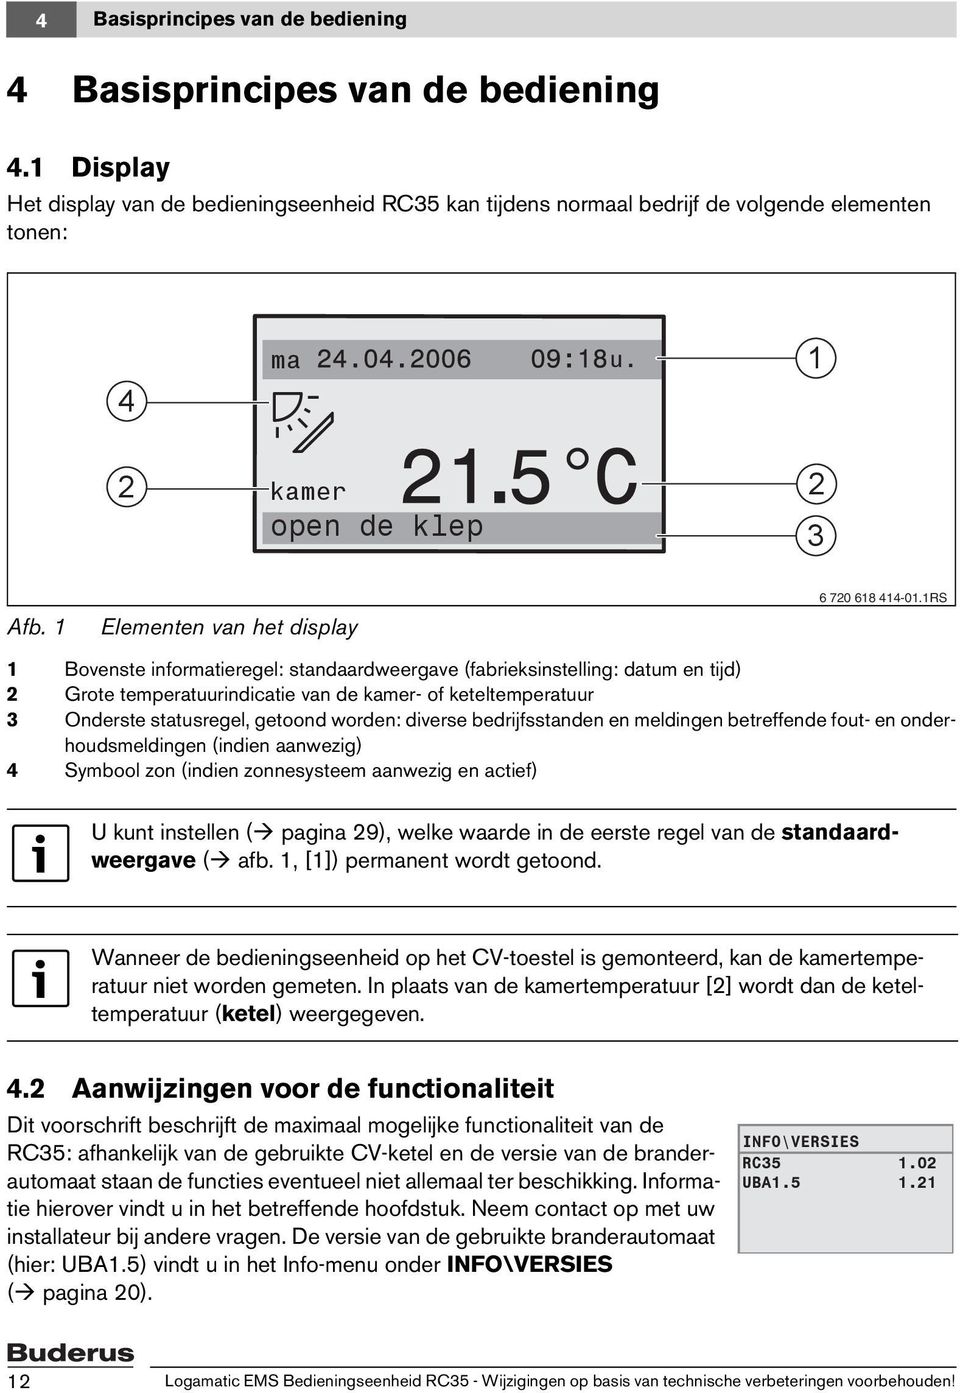 1RS 1 Bovenste informatieregel: standaardweergave (fabrieksinstelling: datum en tijd) 2 Grote temperatuurindicatie van de kamer- of keteltemperatuur 3 Onderste statusregel, getoond worden: diverse